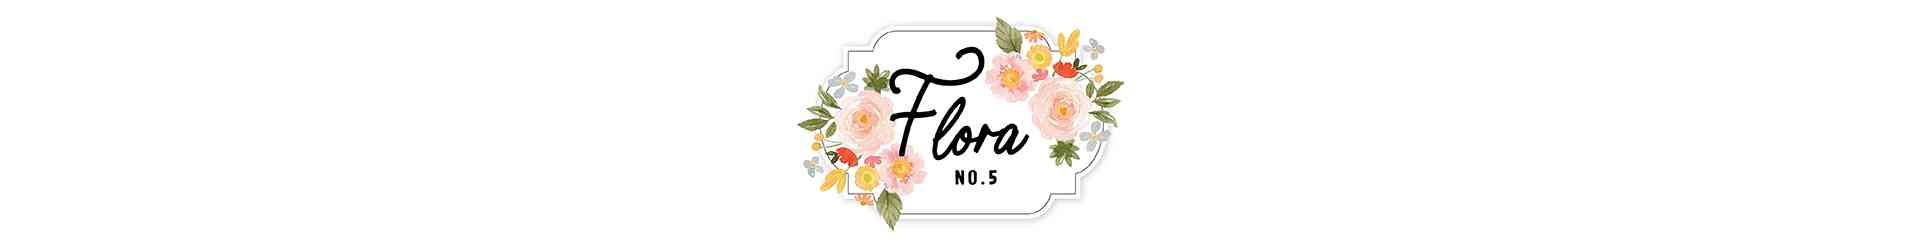 Flora N.5